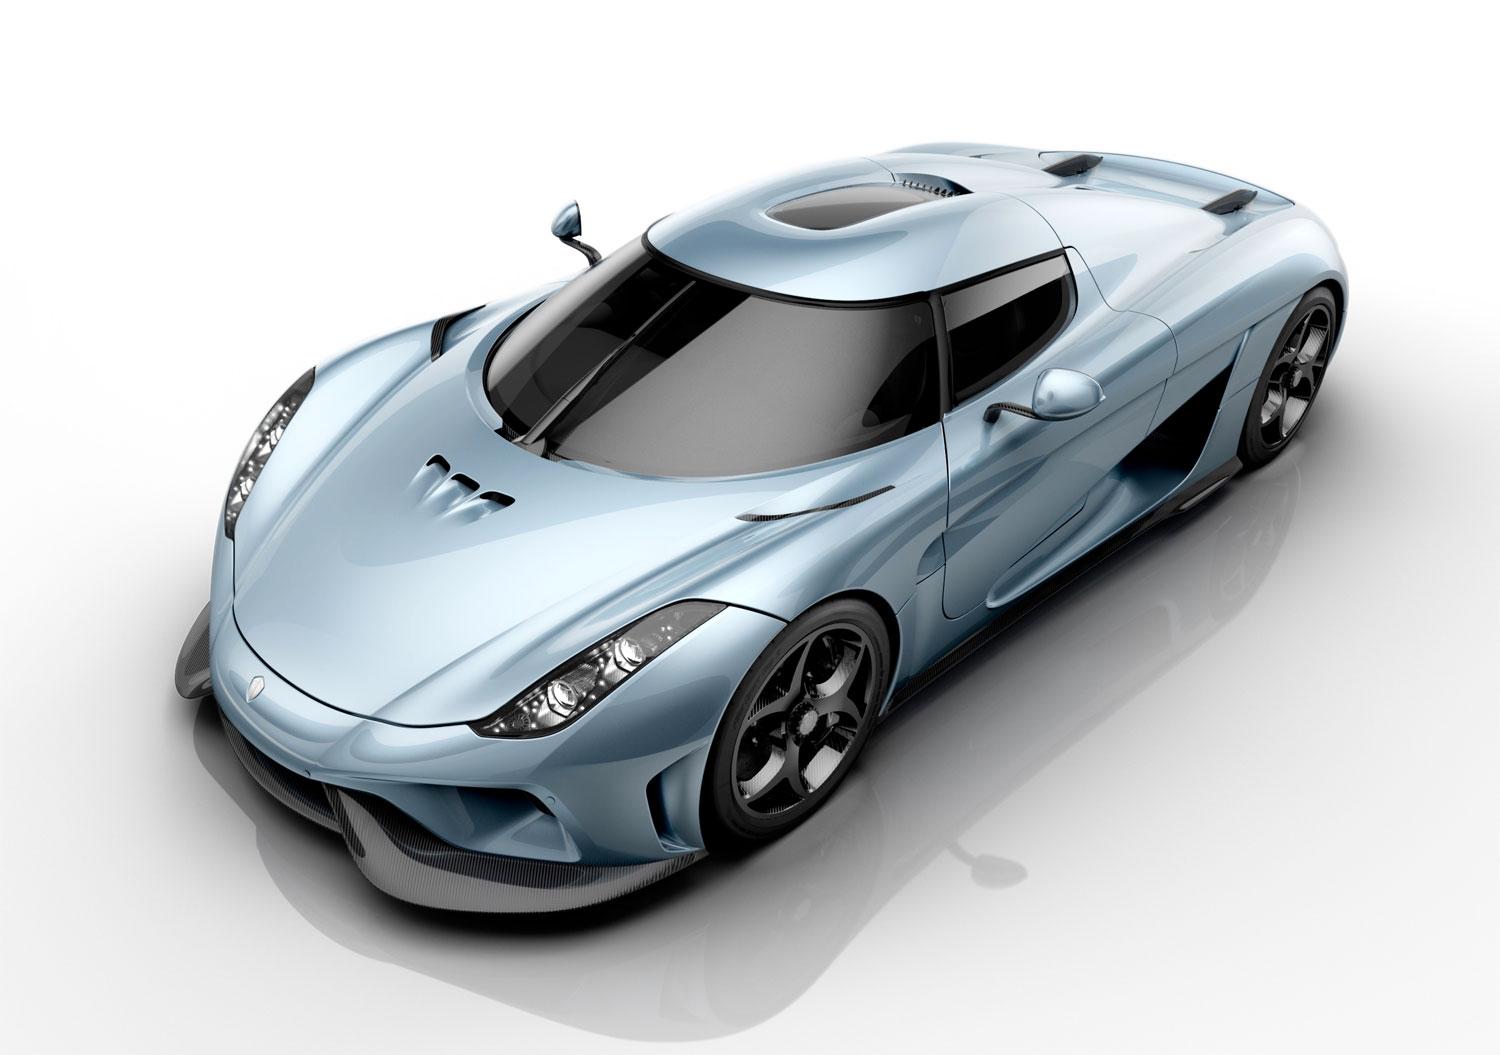 Tidigare i år visade Koenigsegg upp sin första hybrid: Regera. Även den en ”megabil”.